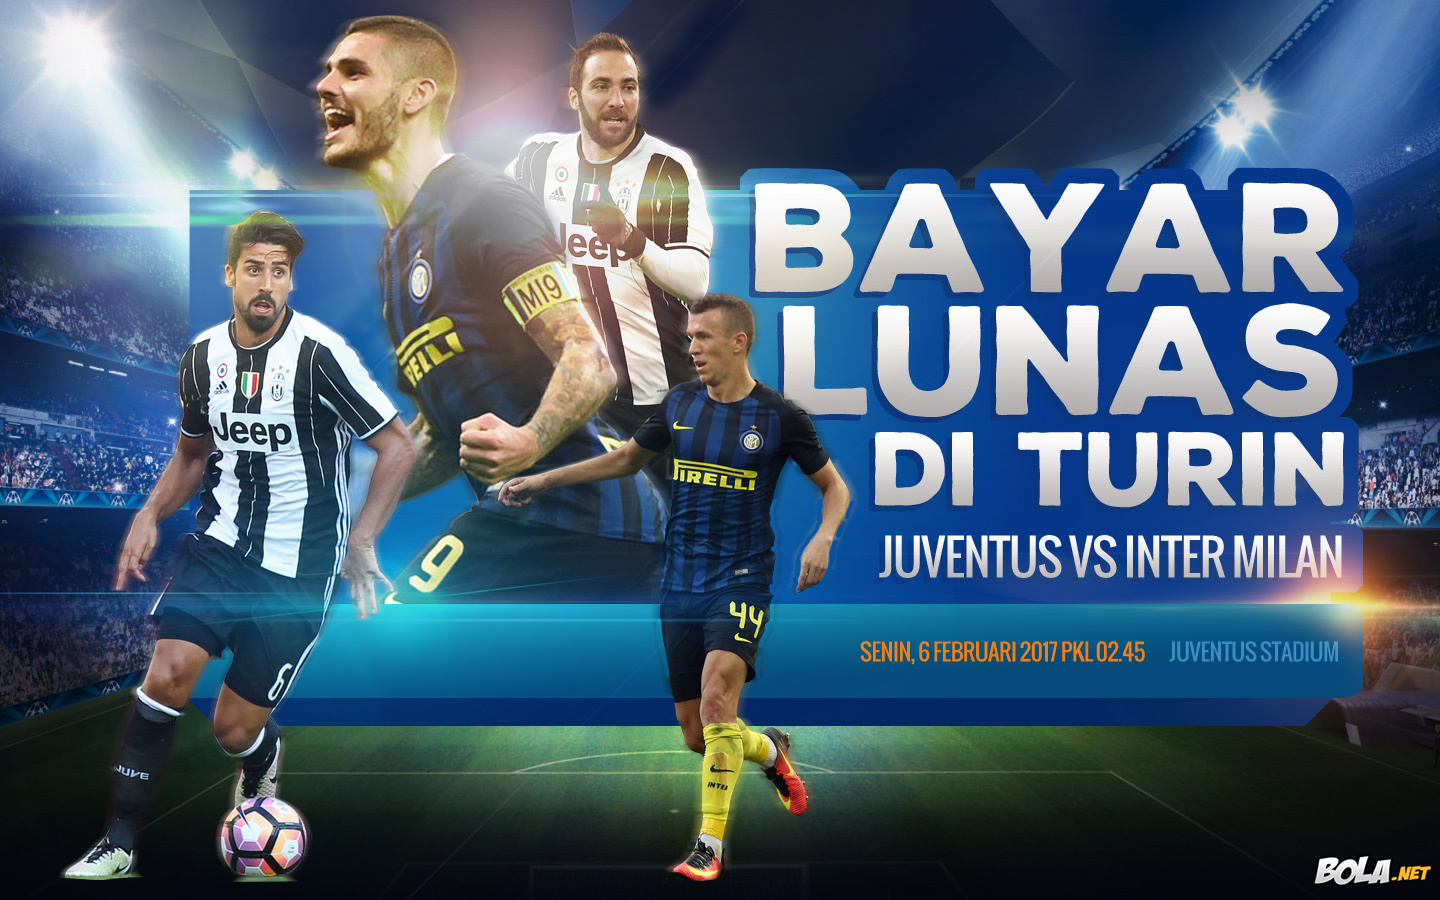 Deskripsi : Wallpaper Juventus Vs Inter Milan, size: 1440x900